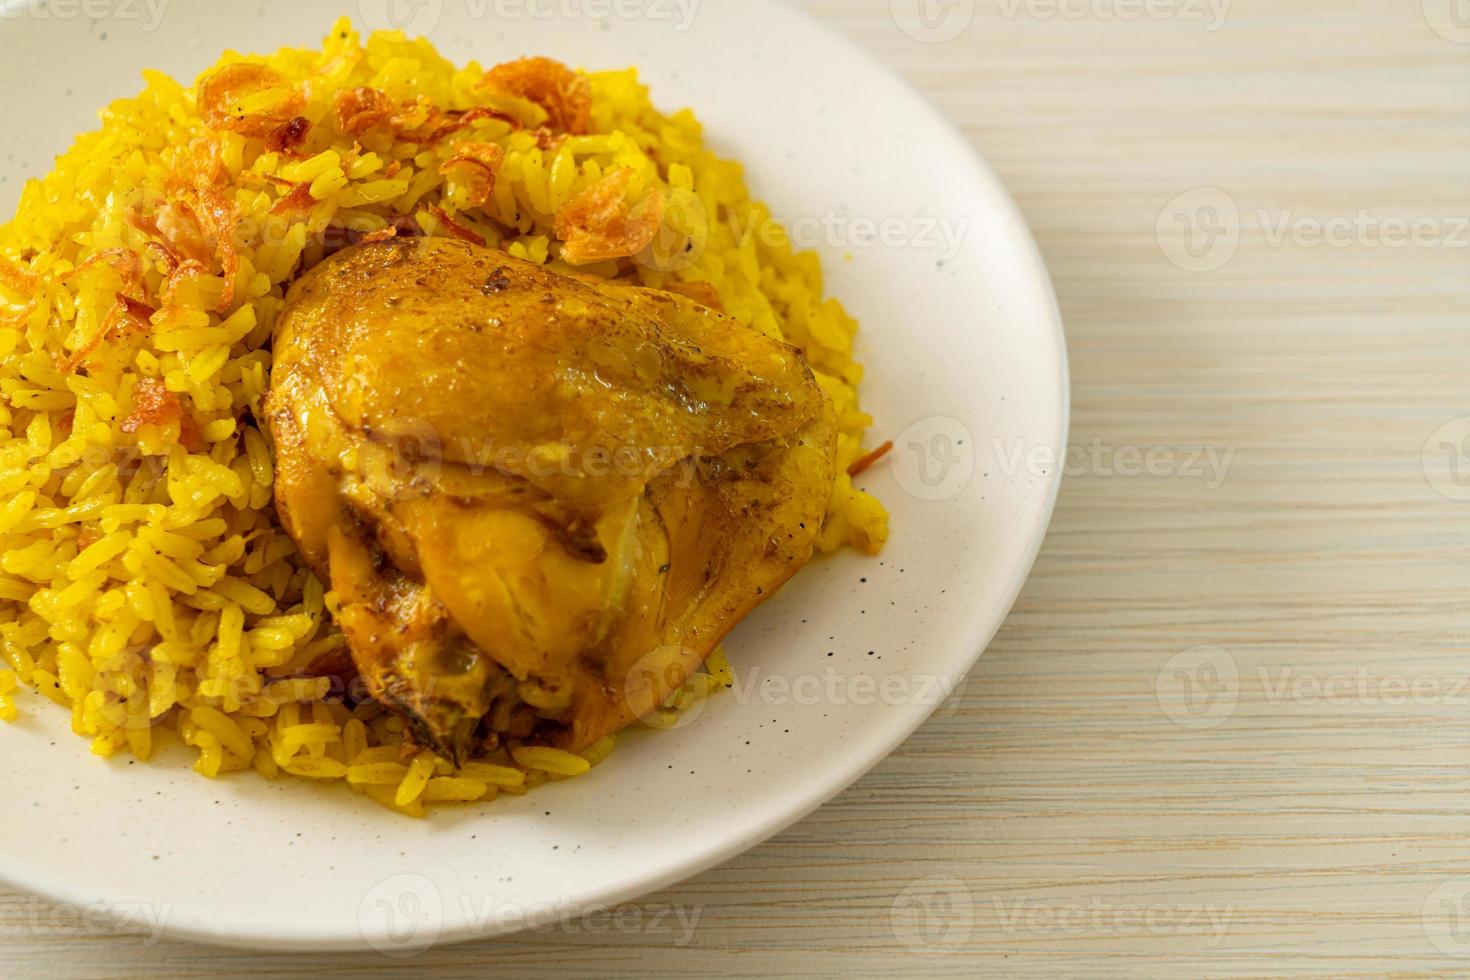 frango biryani ou arroz com curry e frango - versão tailandês-muçulmana do biryani indiano, com arroz amarelo perfumado e frango foto